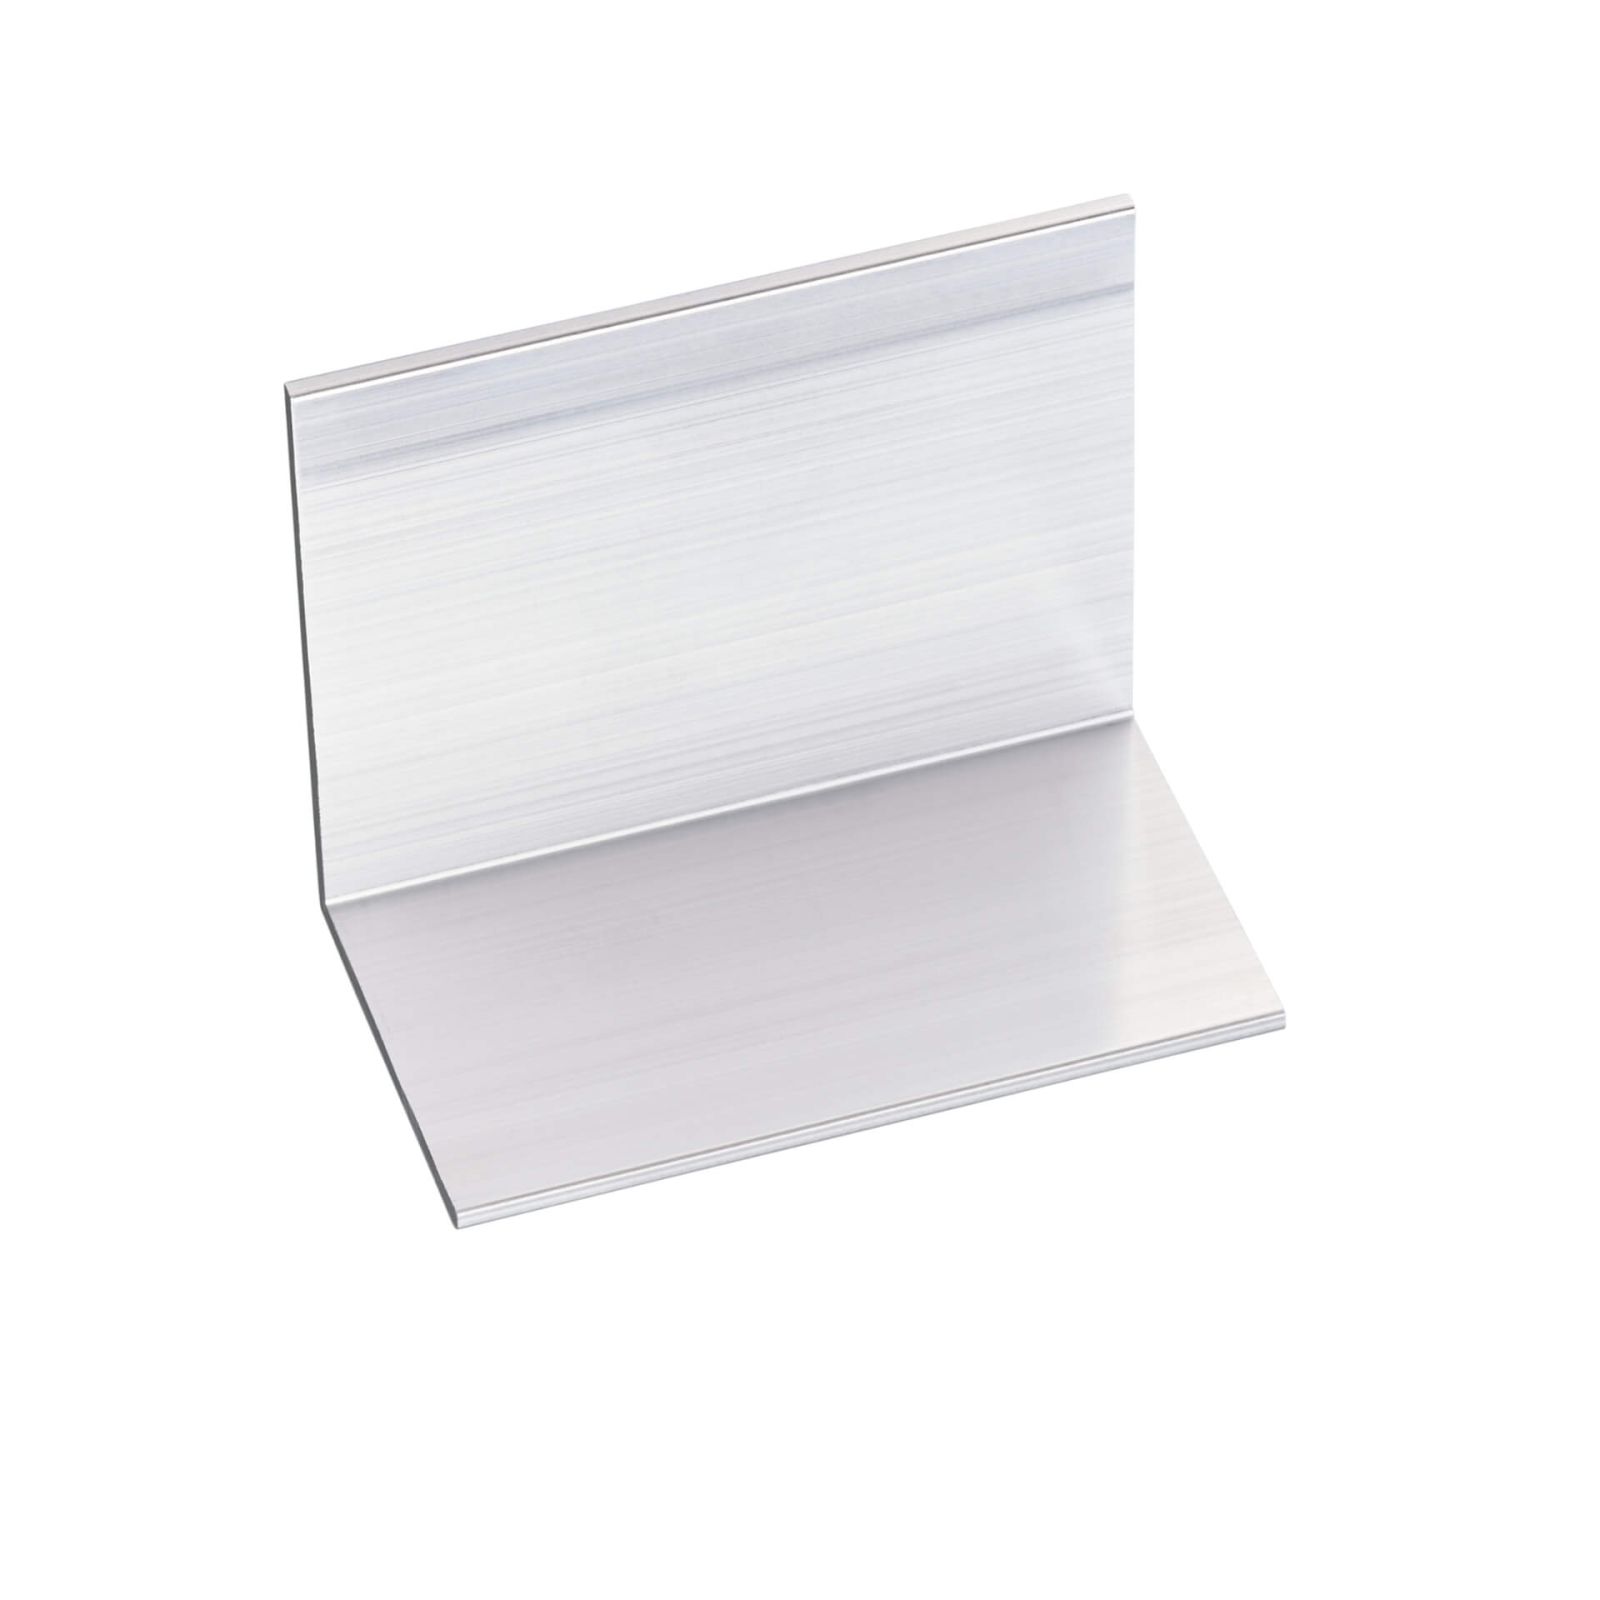 Polycarbonat Doppelstegplatte | 16 mm | Profil A1 | Sparpaket | Plattenbreite 980 mm | Klar | Breitkammer | Breite 3,08 m | Länge 2,00 m #7